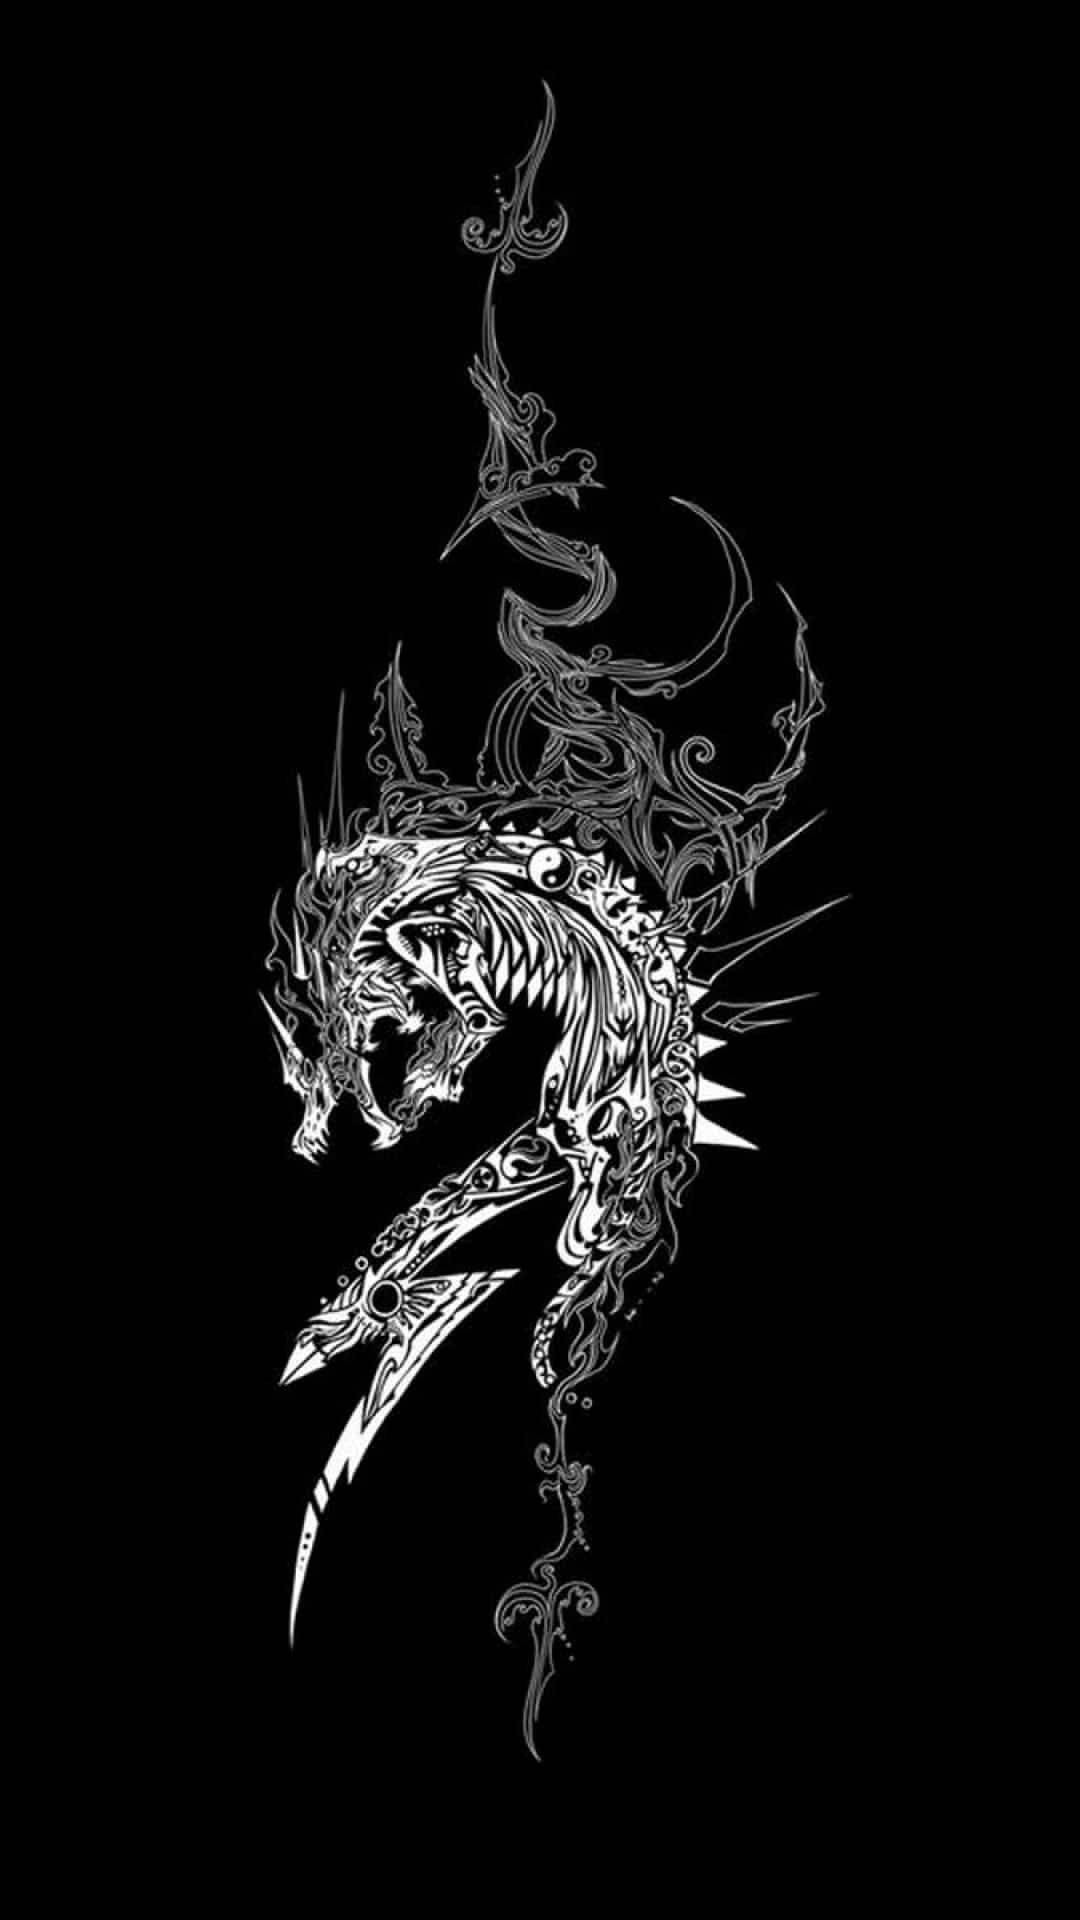 Dark Theme Black And White Dragon Smoke Wallpaper